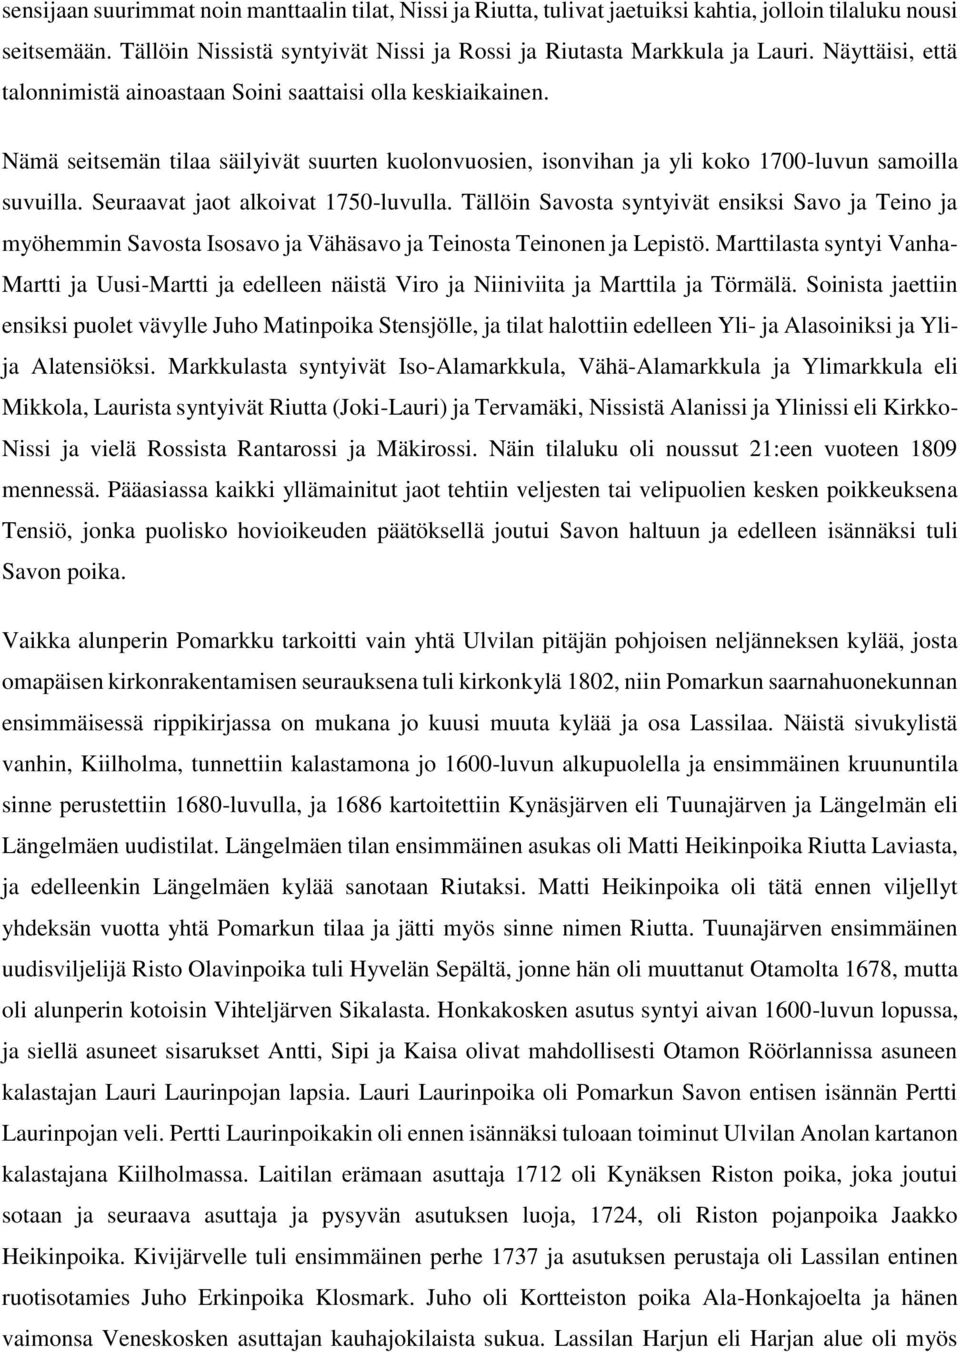 Seuraavat jaot alkoivat 1750-luvulla. Tällöin Savosta syntyivät ensiksi Savo ja Teino ja myöhemmin Savosta Isosavo ja Vähäsavo ja Teinosta Teinonen ja Lepistö.